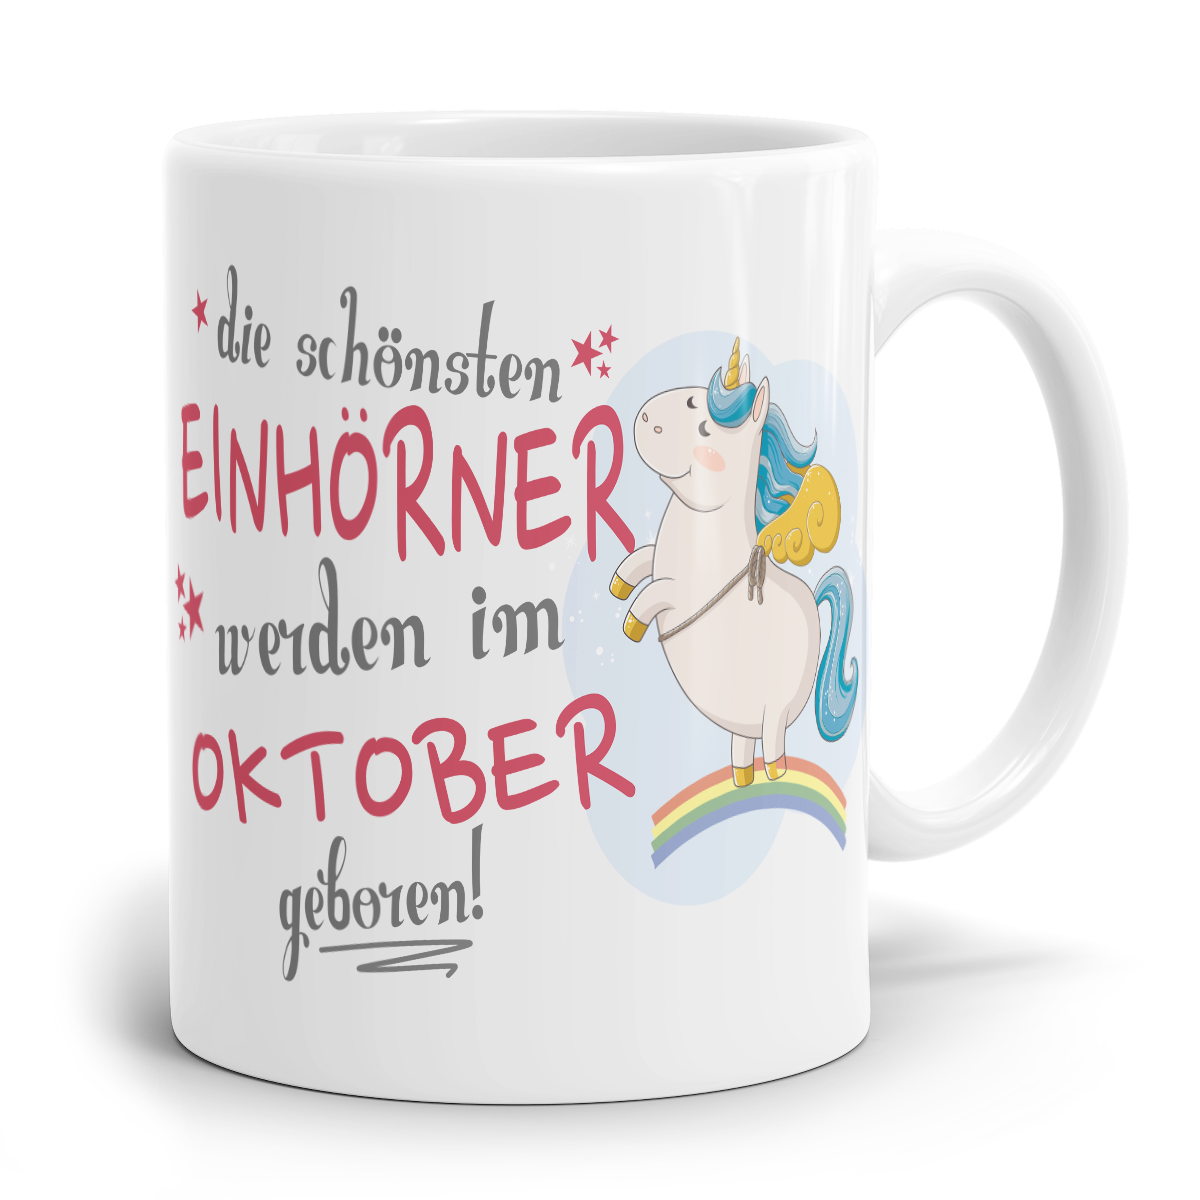 Einhorn Tasse "Schönsten Einhörner - Oktober"